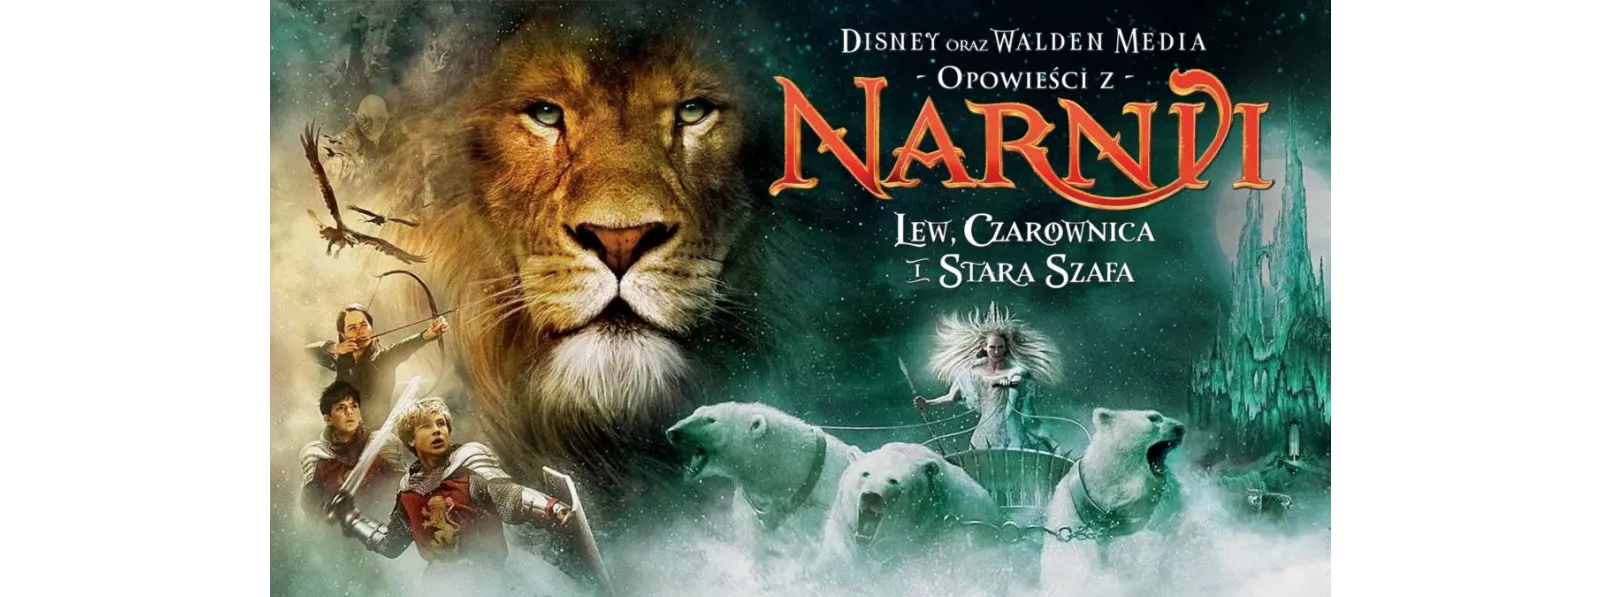 Narnia nadchodzi !!!